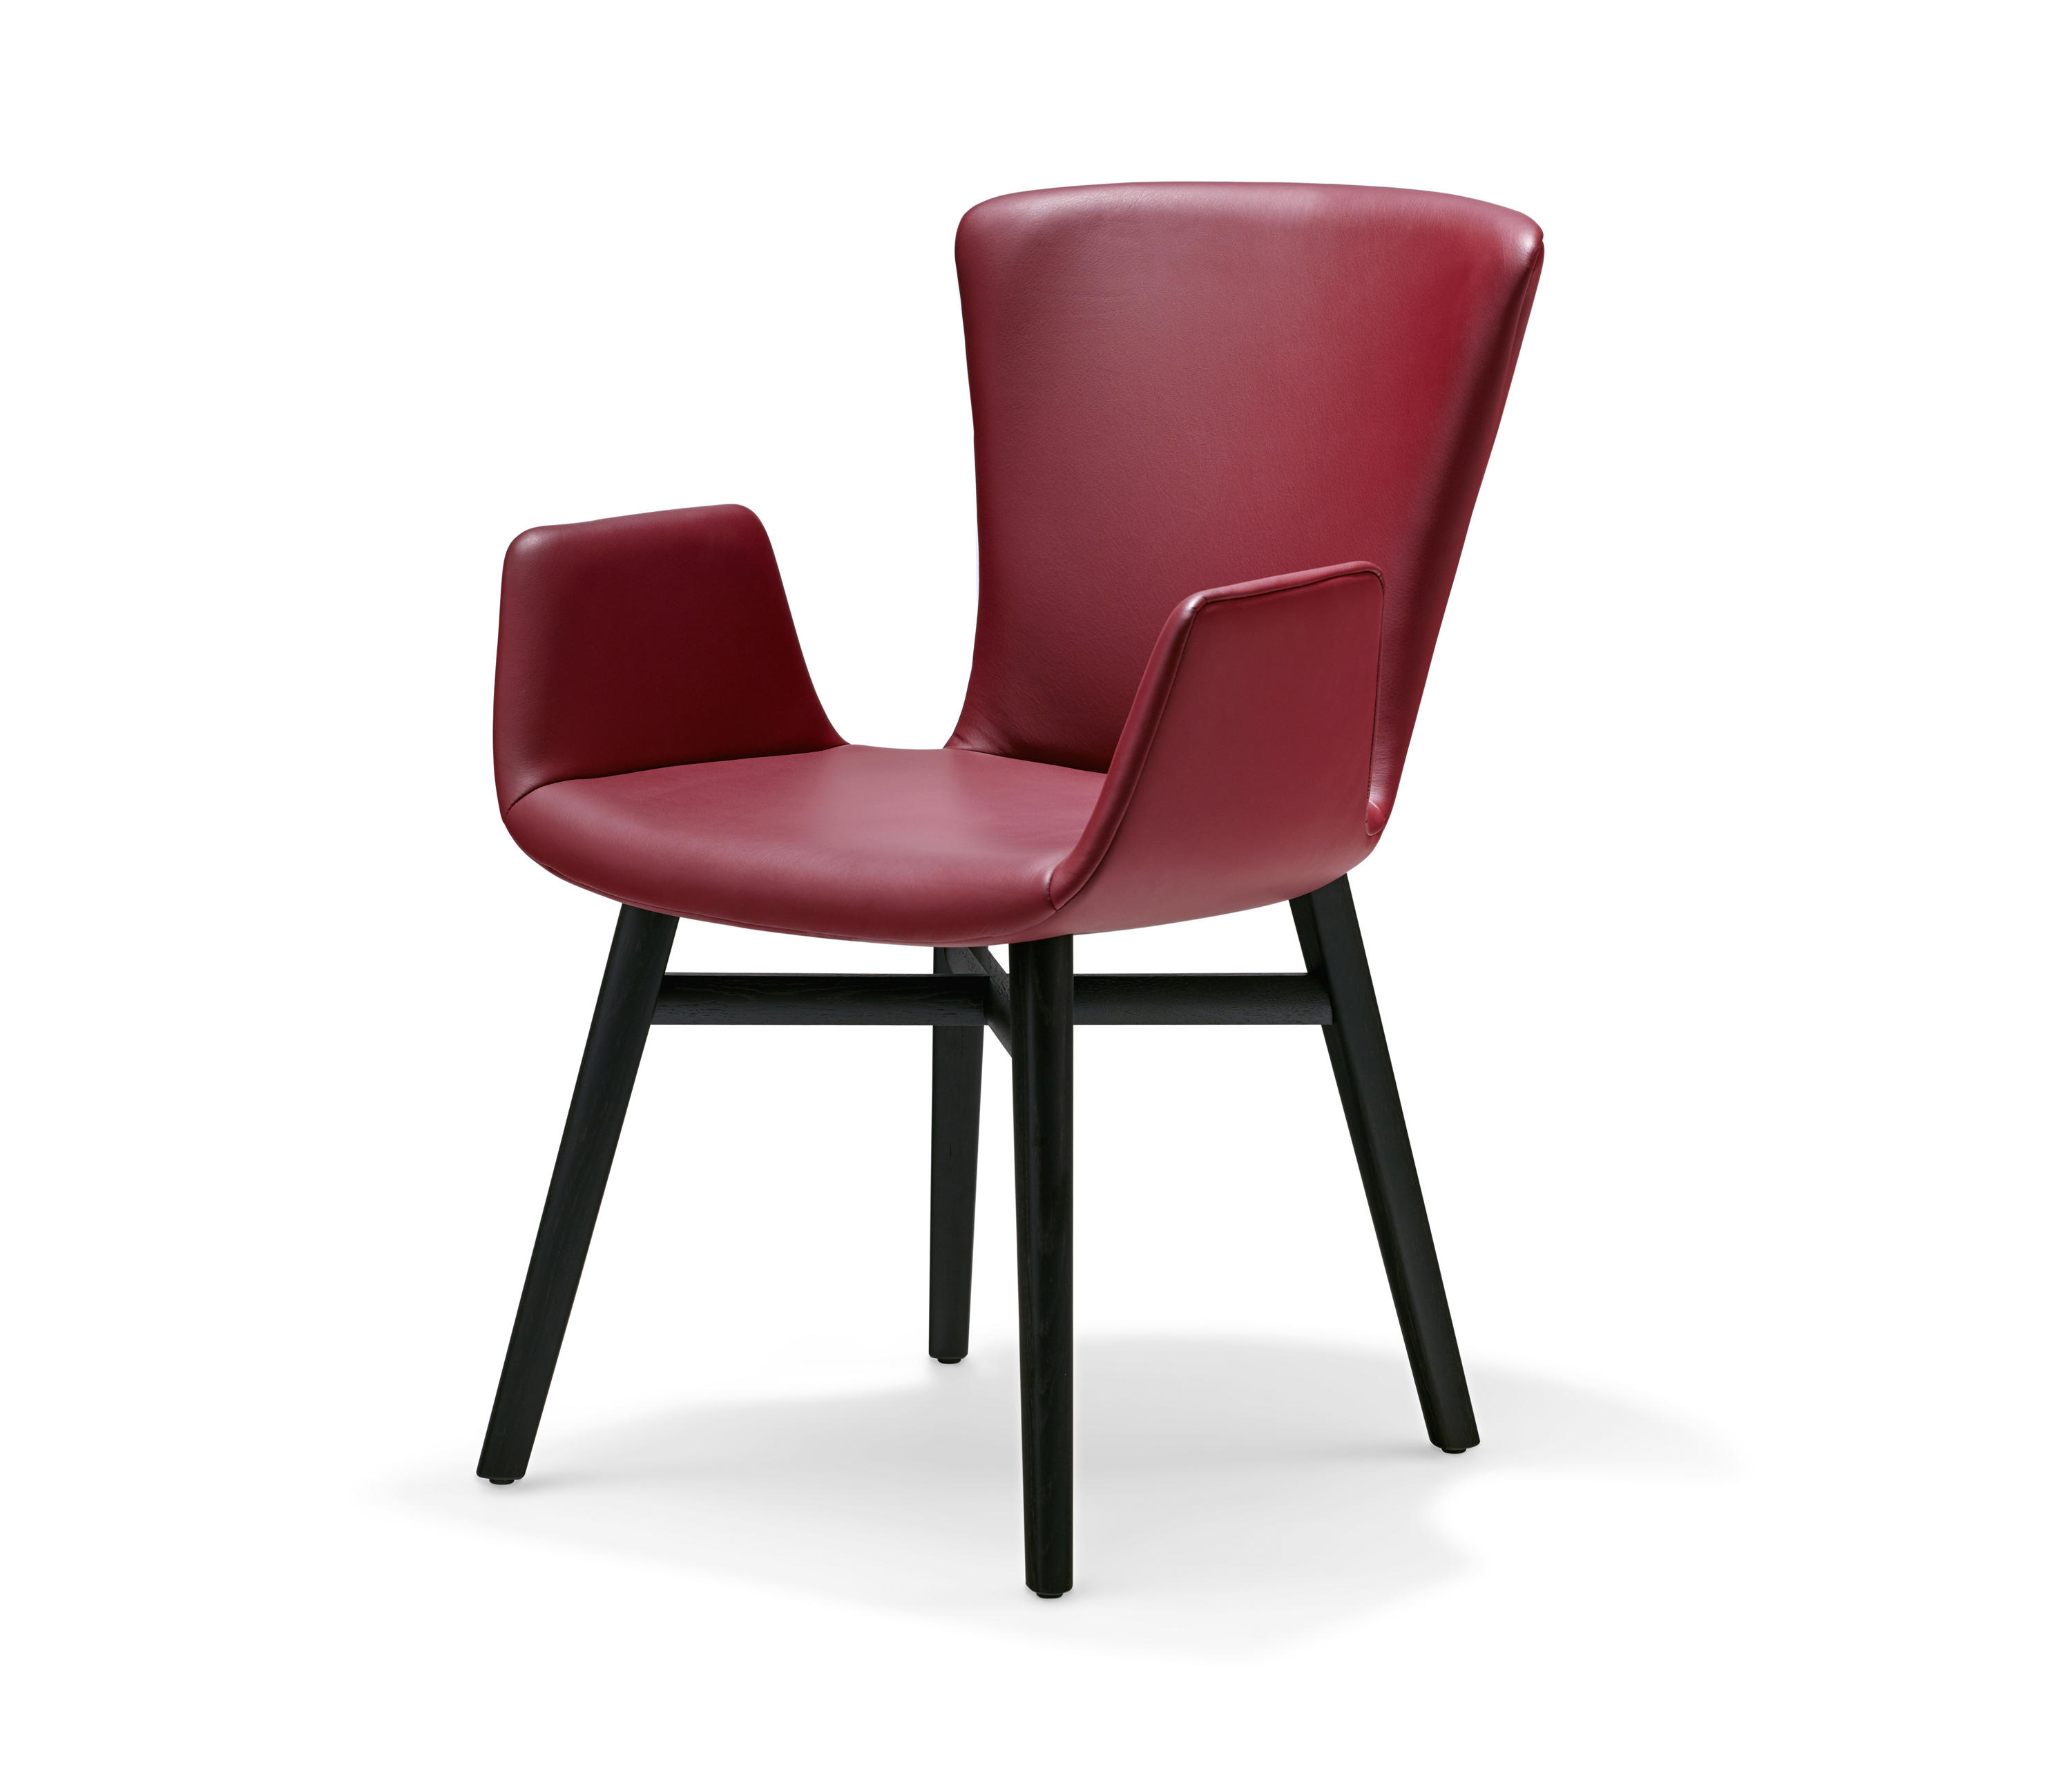 DEXTER Chair by Draenert